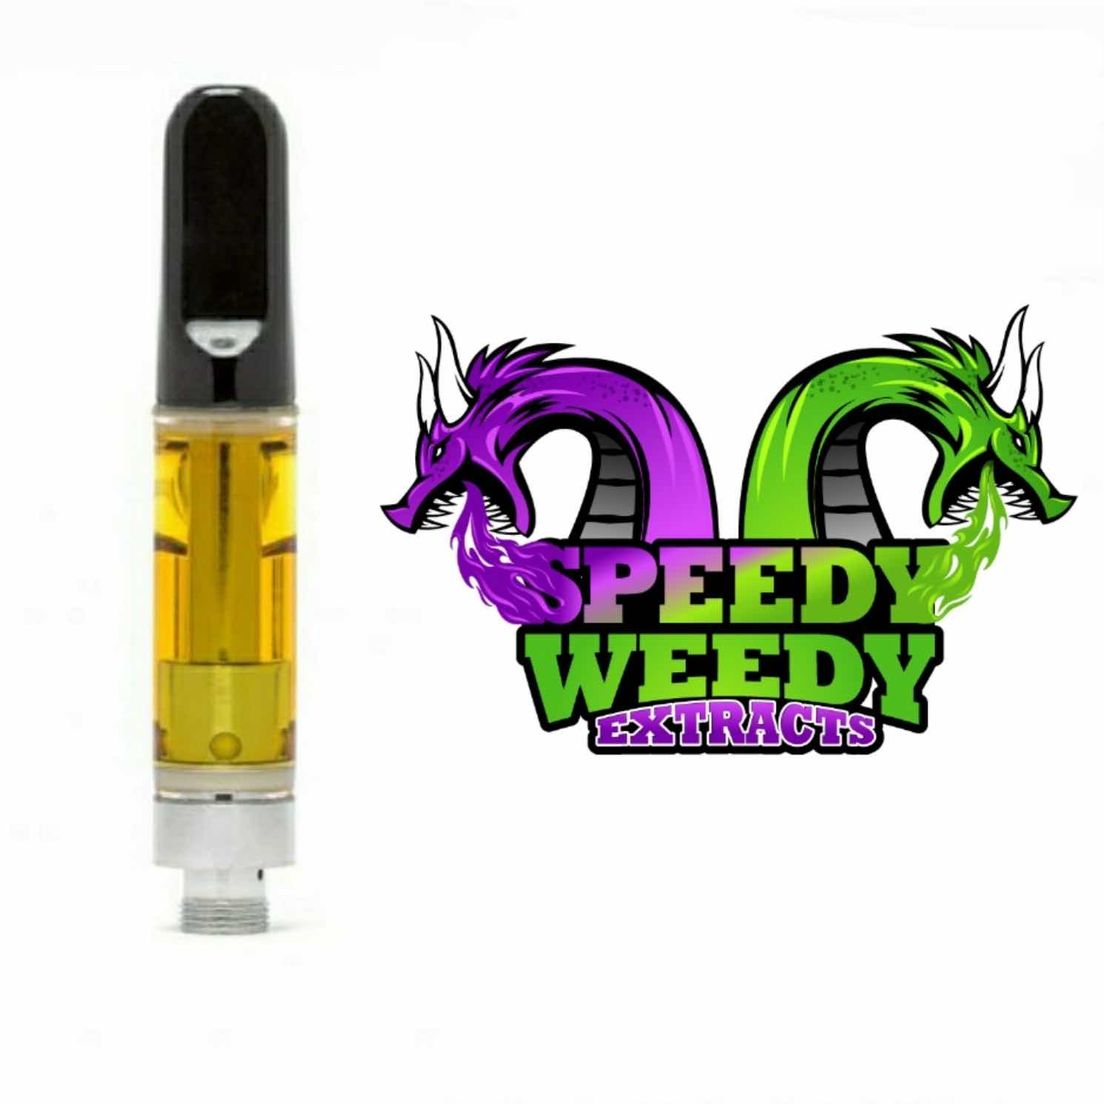 1. Speedy Weedy 1g THC Cartridge - Ghost OG (I)